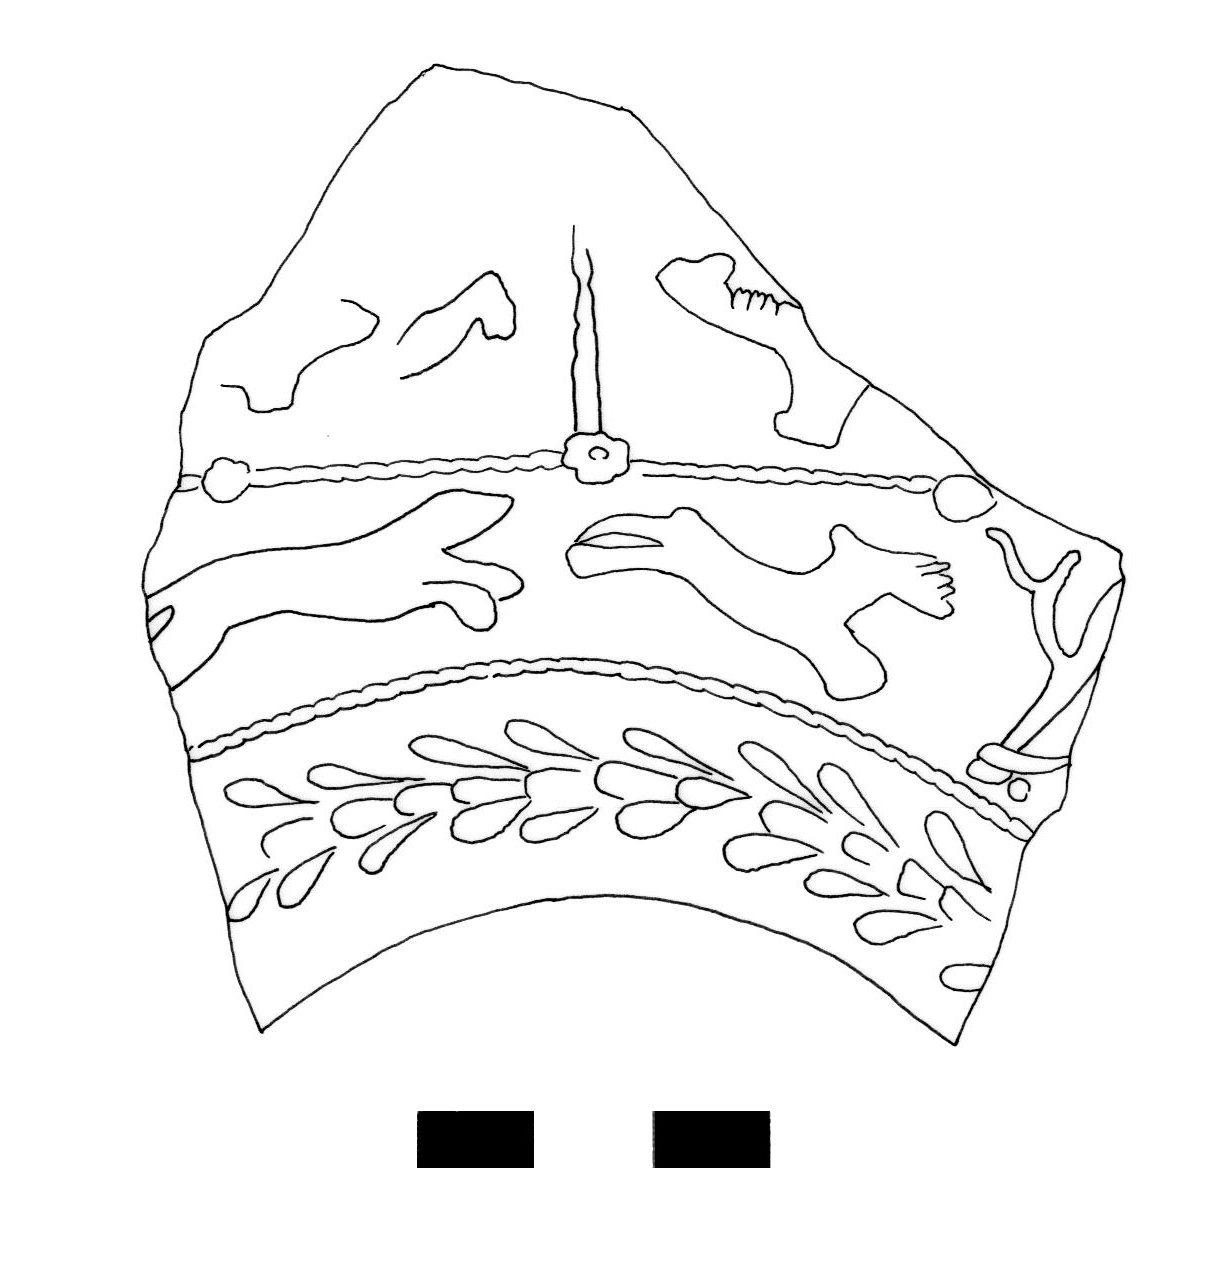 coppa/ emisferica, Dragendorff 37 - ambito gallo romano, produzione di Banassac (II)